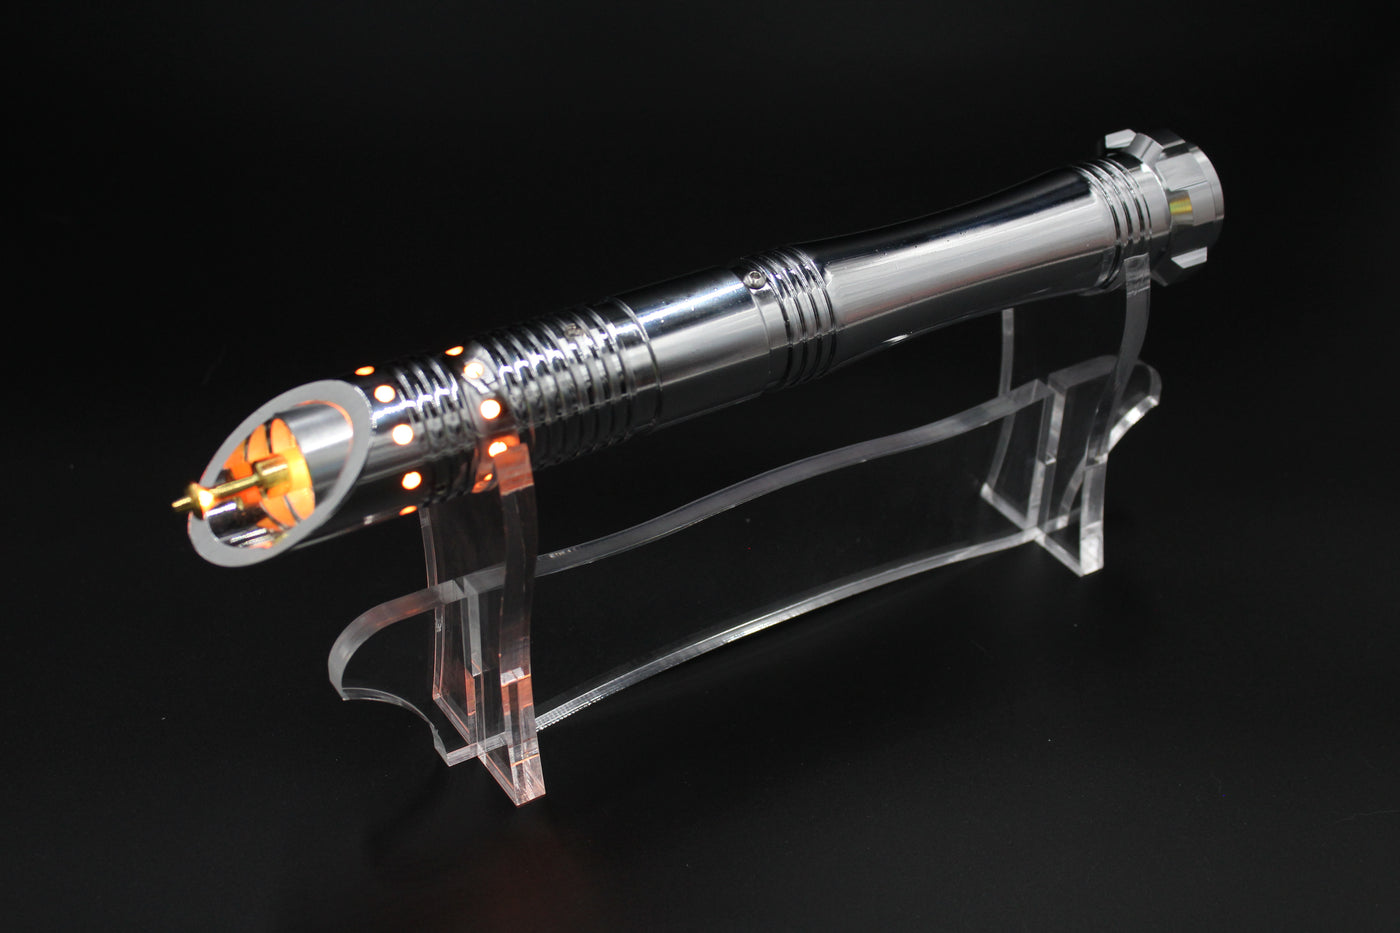 Lightsaber standaard - 3 delig (V1) - KenJo Sabers - Star Wars Lightsaber replica Jedi Sith - Best sabershop Europe - Nederland light sabers kopen -